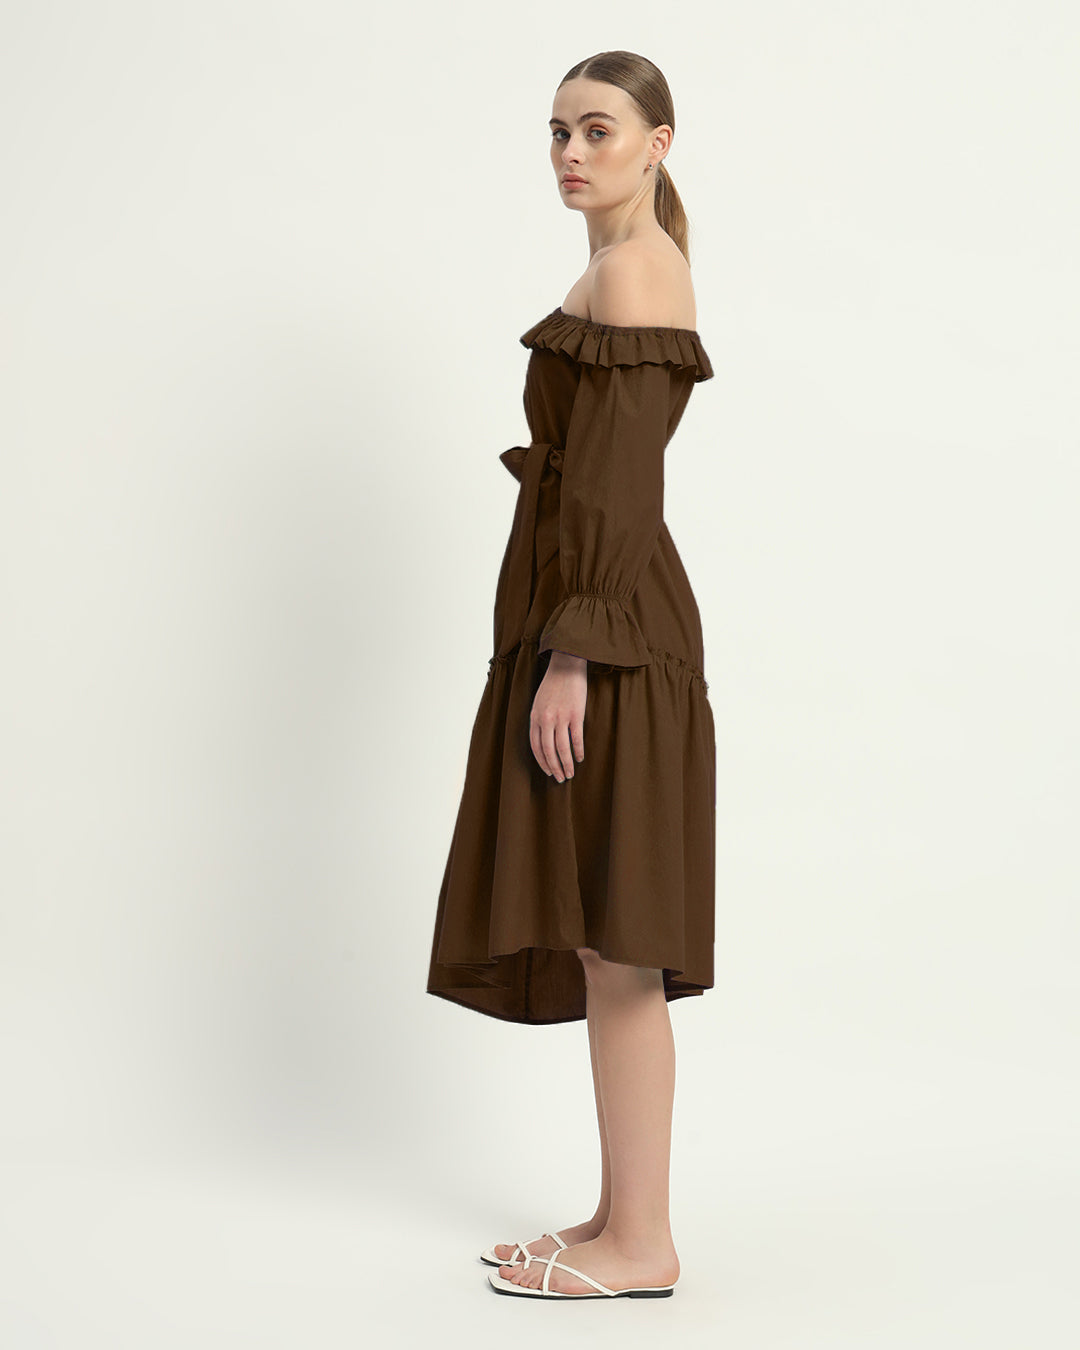 The Nutshell Stellata Cotton Dress